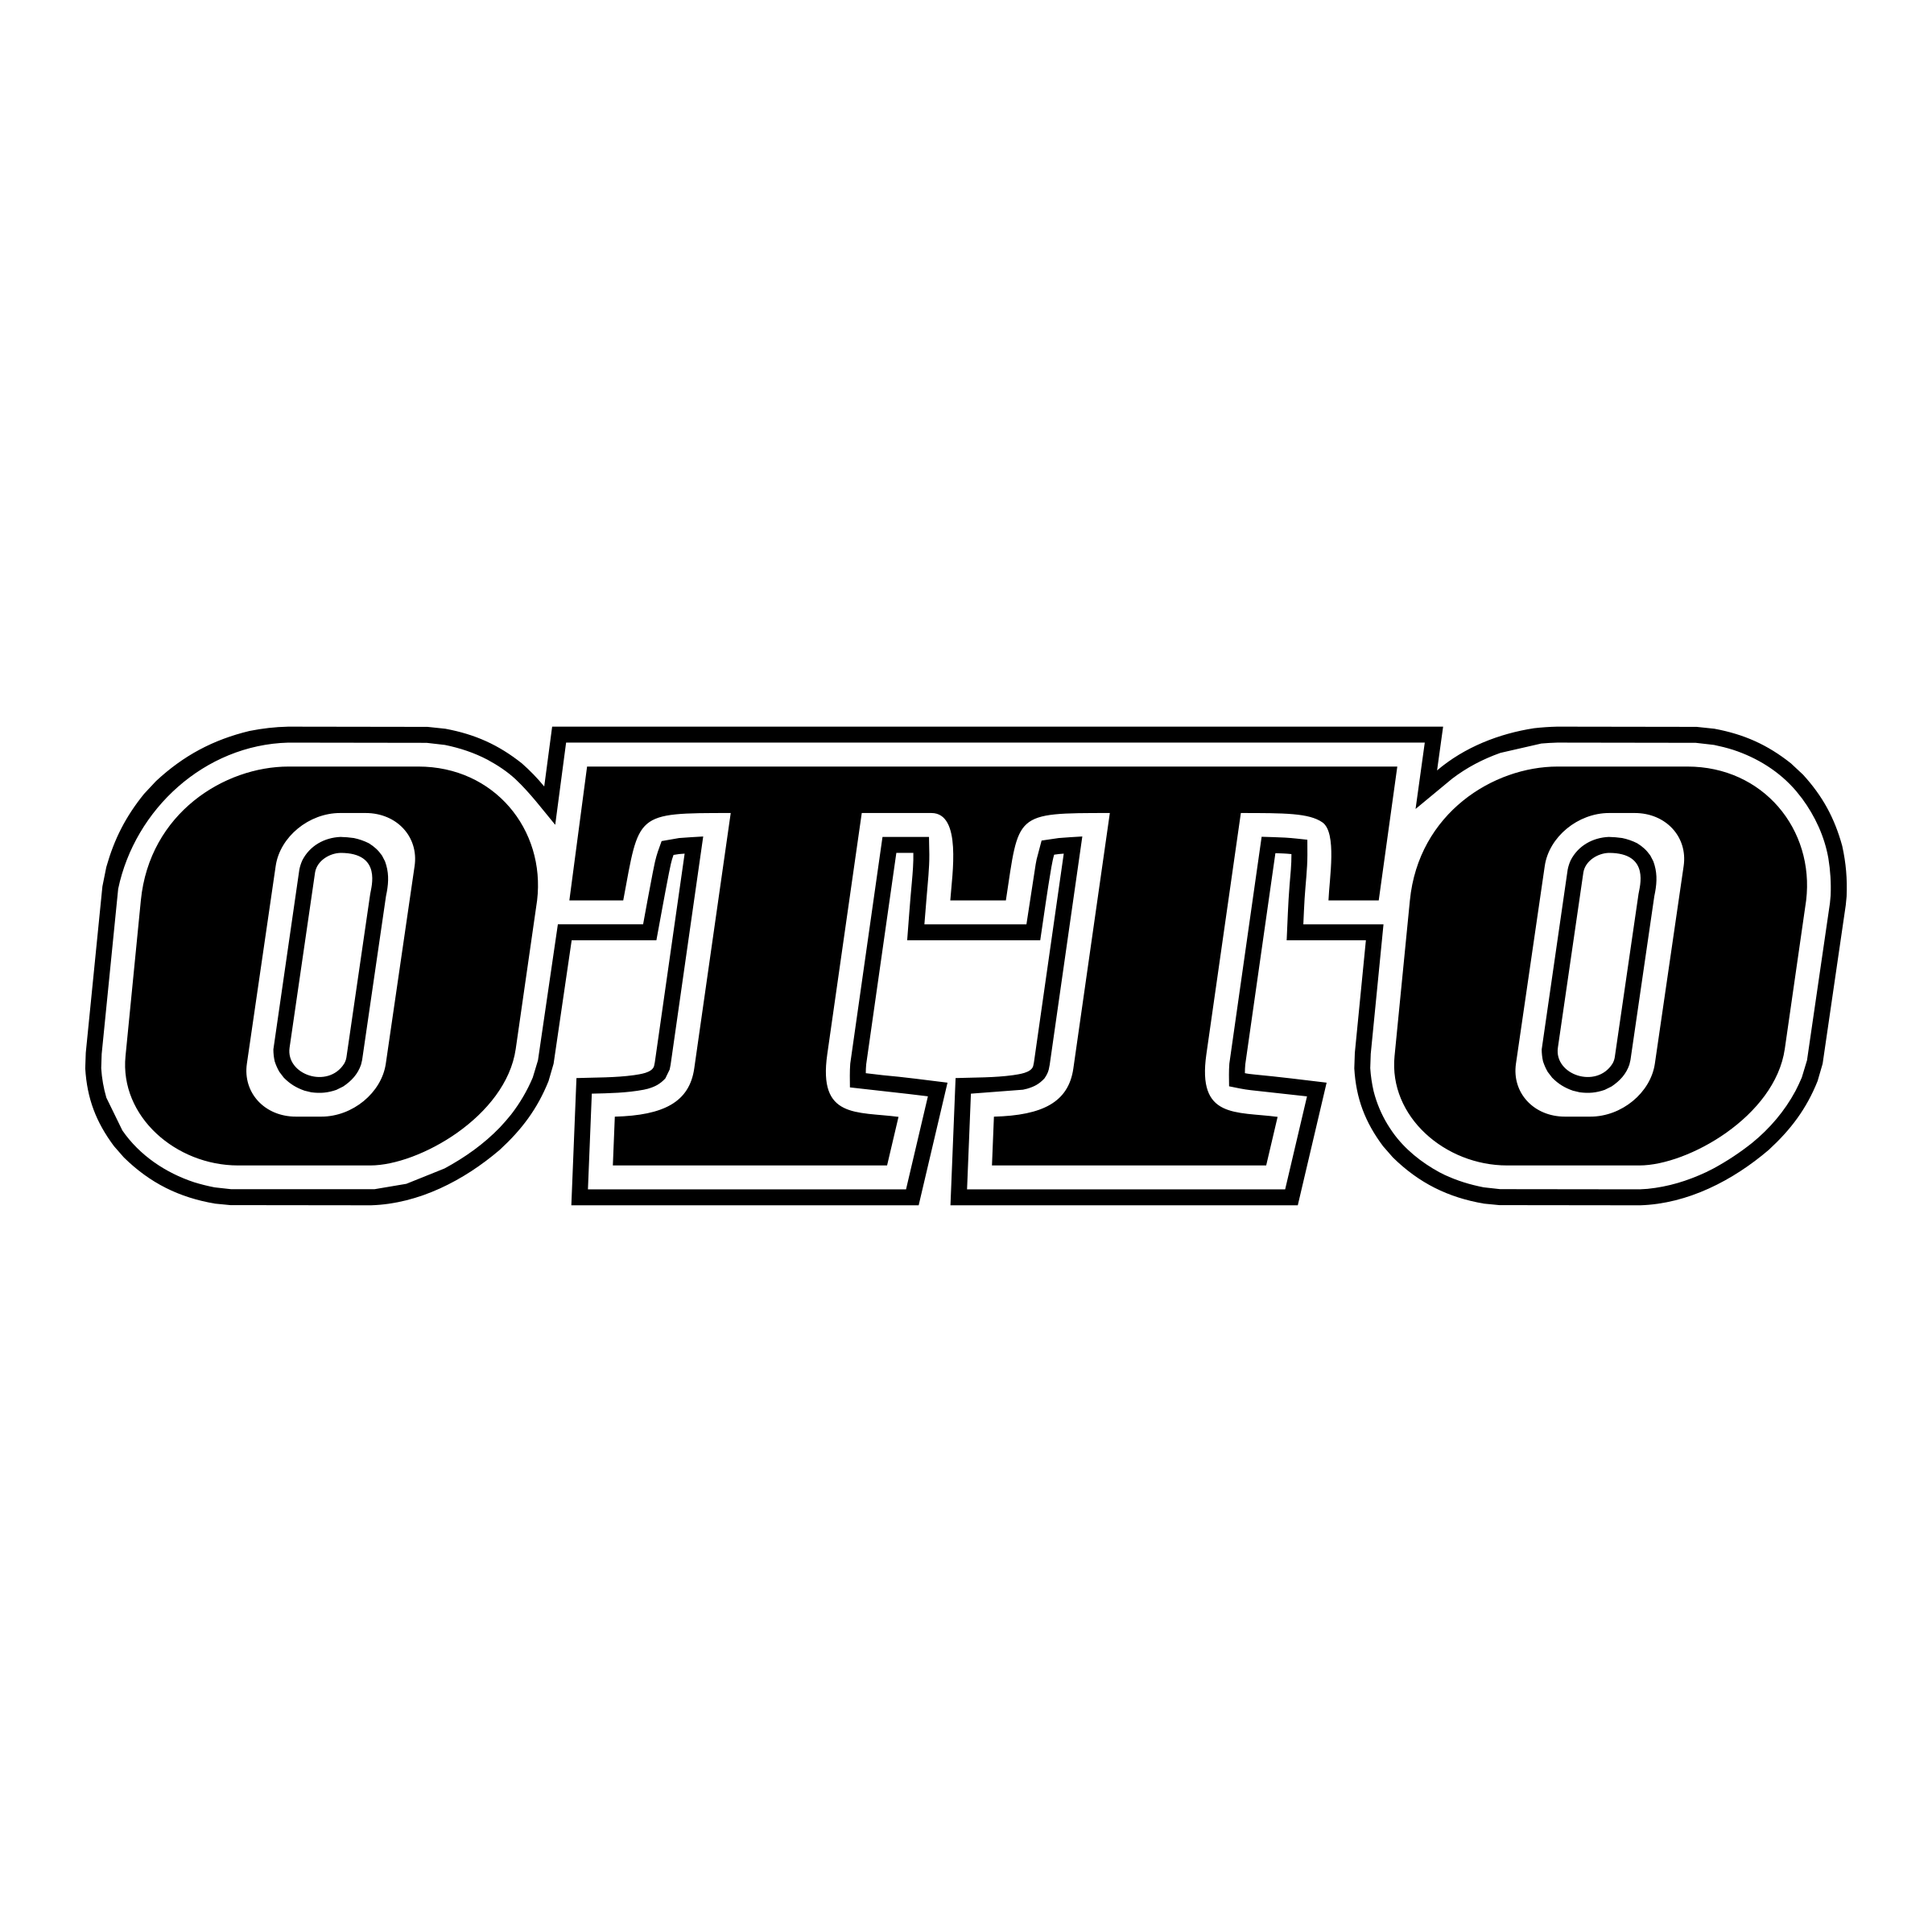 Otto Logo - Otto Logo PNG Transparent & SVG Vector